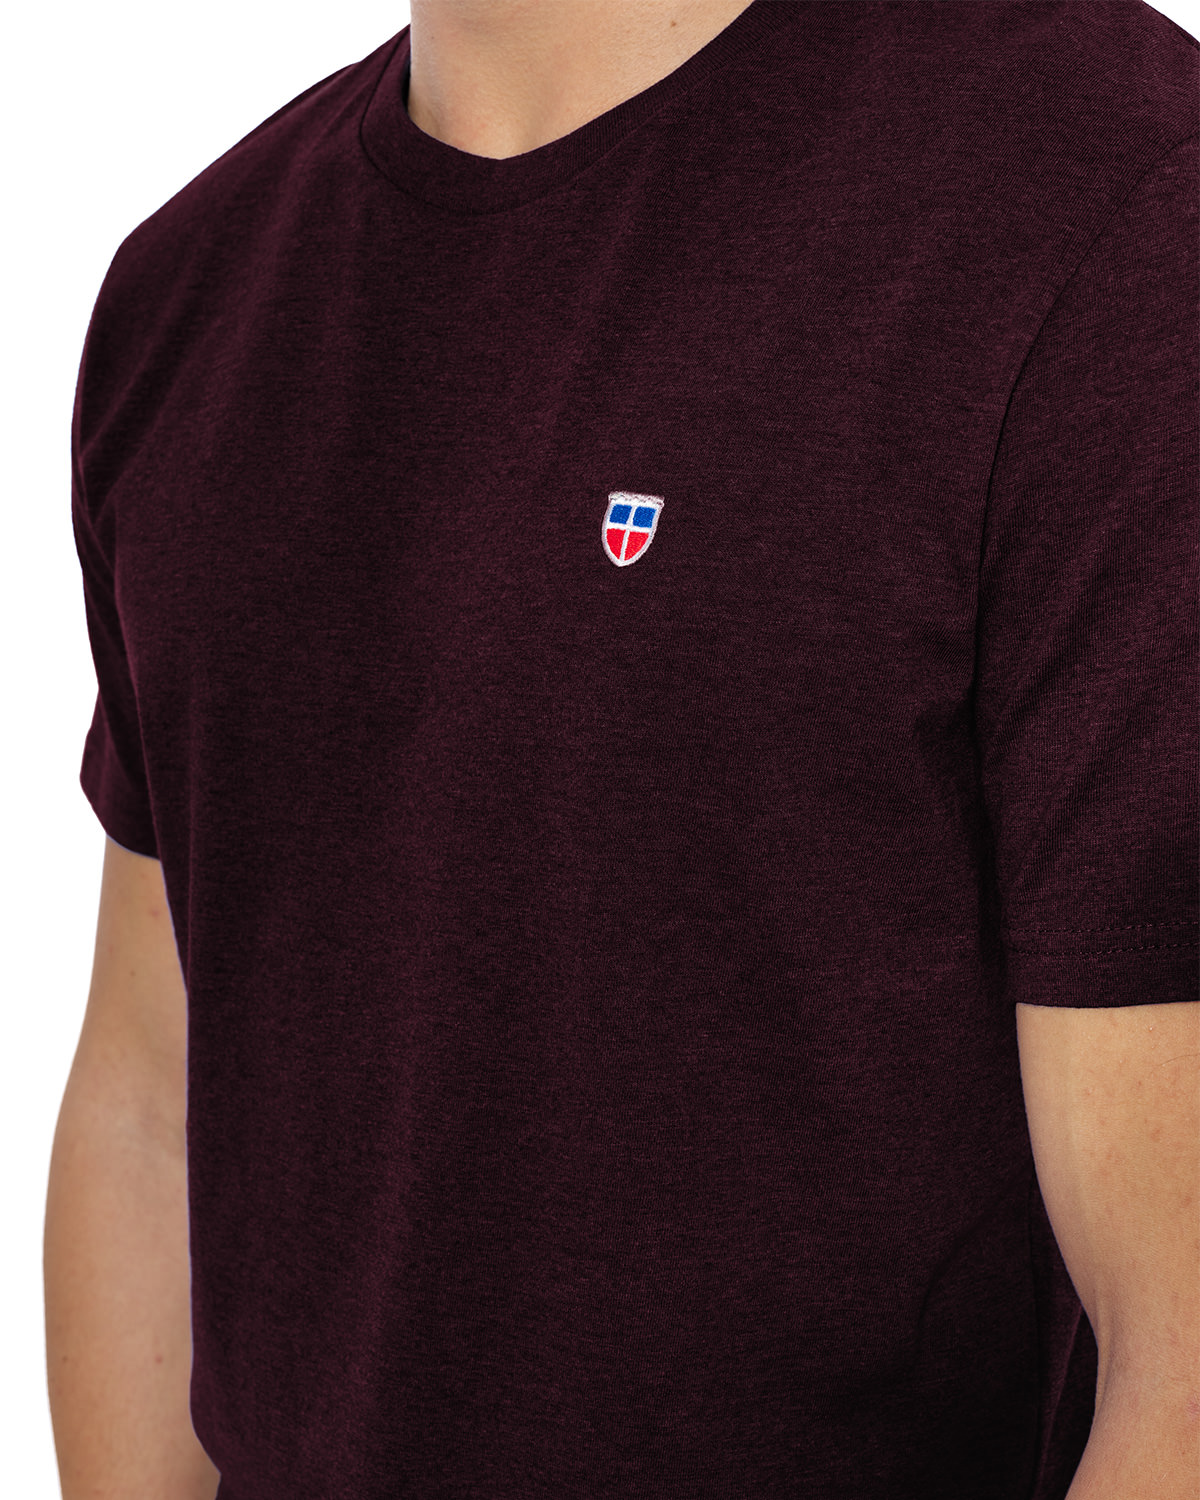 Vorder-Ansicht des hochwertig bestickten Männer T-Shirt „MORITZ“ in der dunkelroten besonderen Farbe Rubin von der Saarland Marke Lasarre mit dem LASARRE Wappen in Blau, Weiß, Rot auf der linken Brust und dem blauen LASARRE Markenzeichen am Saum